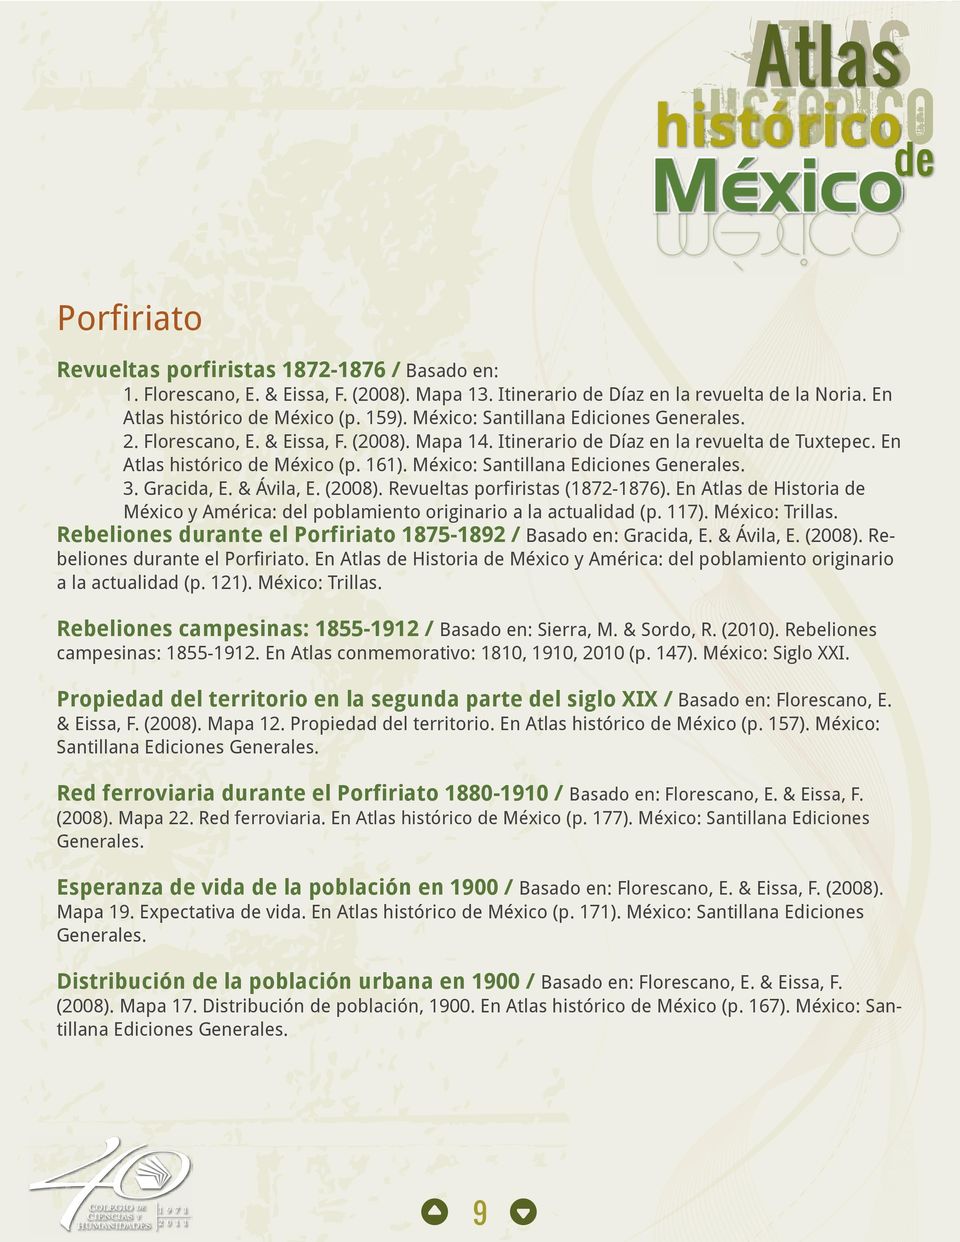 México: Santillana Ediciones Generales. 3. Gracida, E. & Ávila, E. (2008). Revueltas porfiristas (1872-1876). En Atlas de Historia de México y América: del poblamiento originario a la actualidad (p.